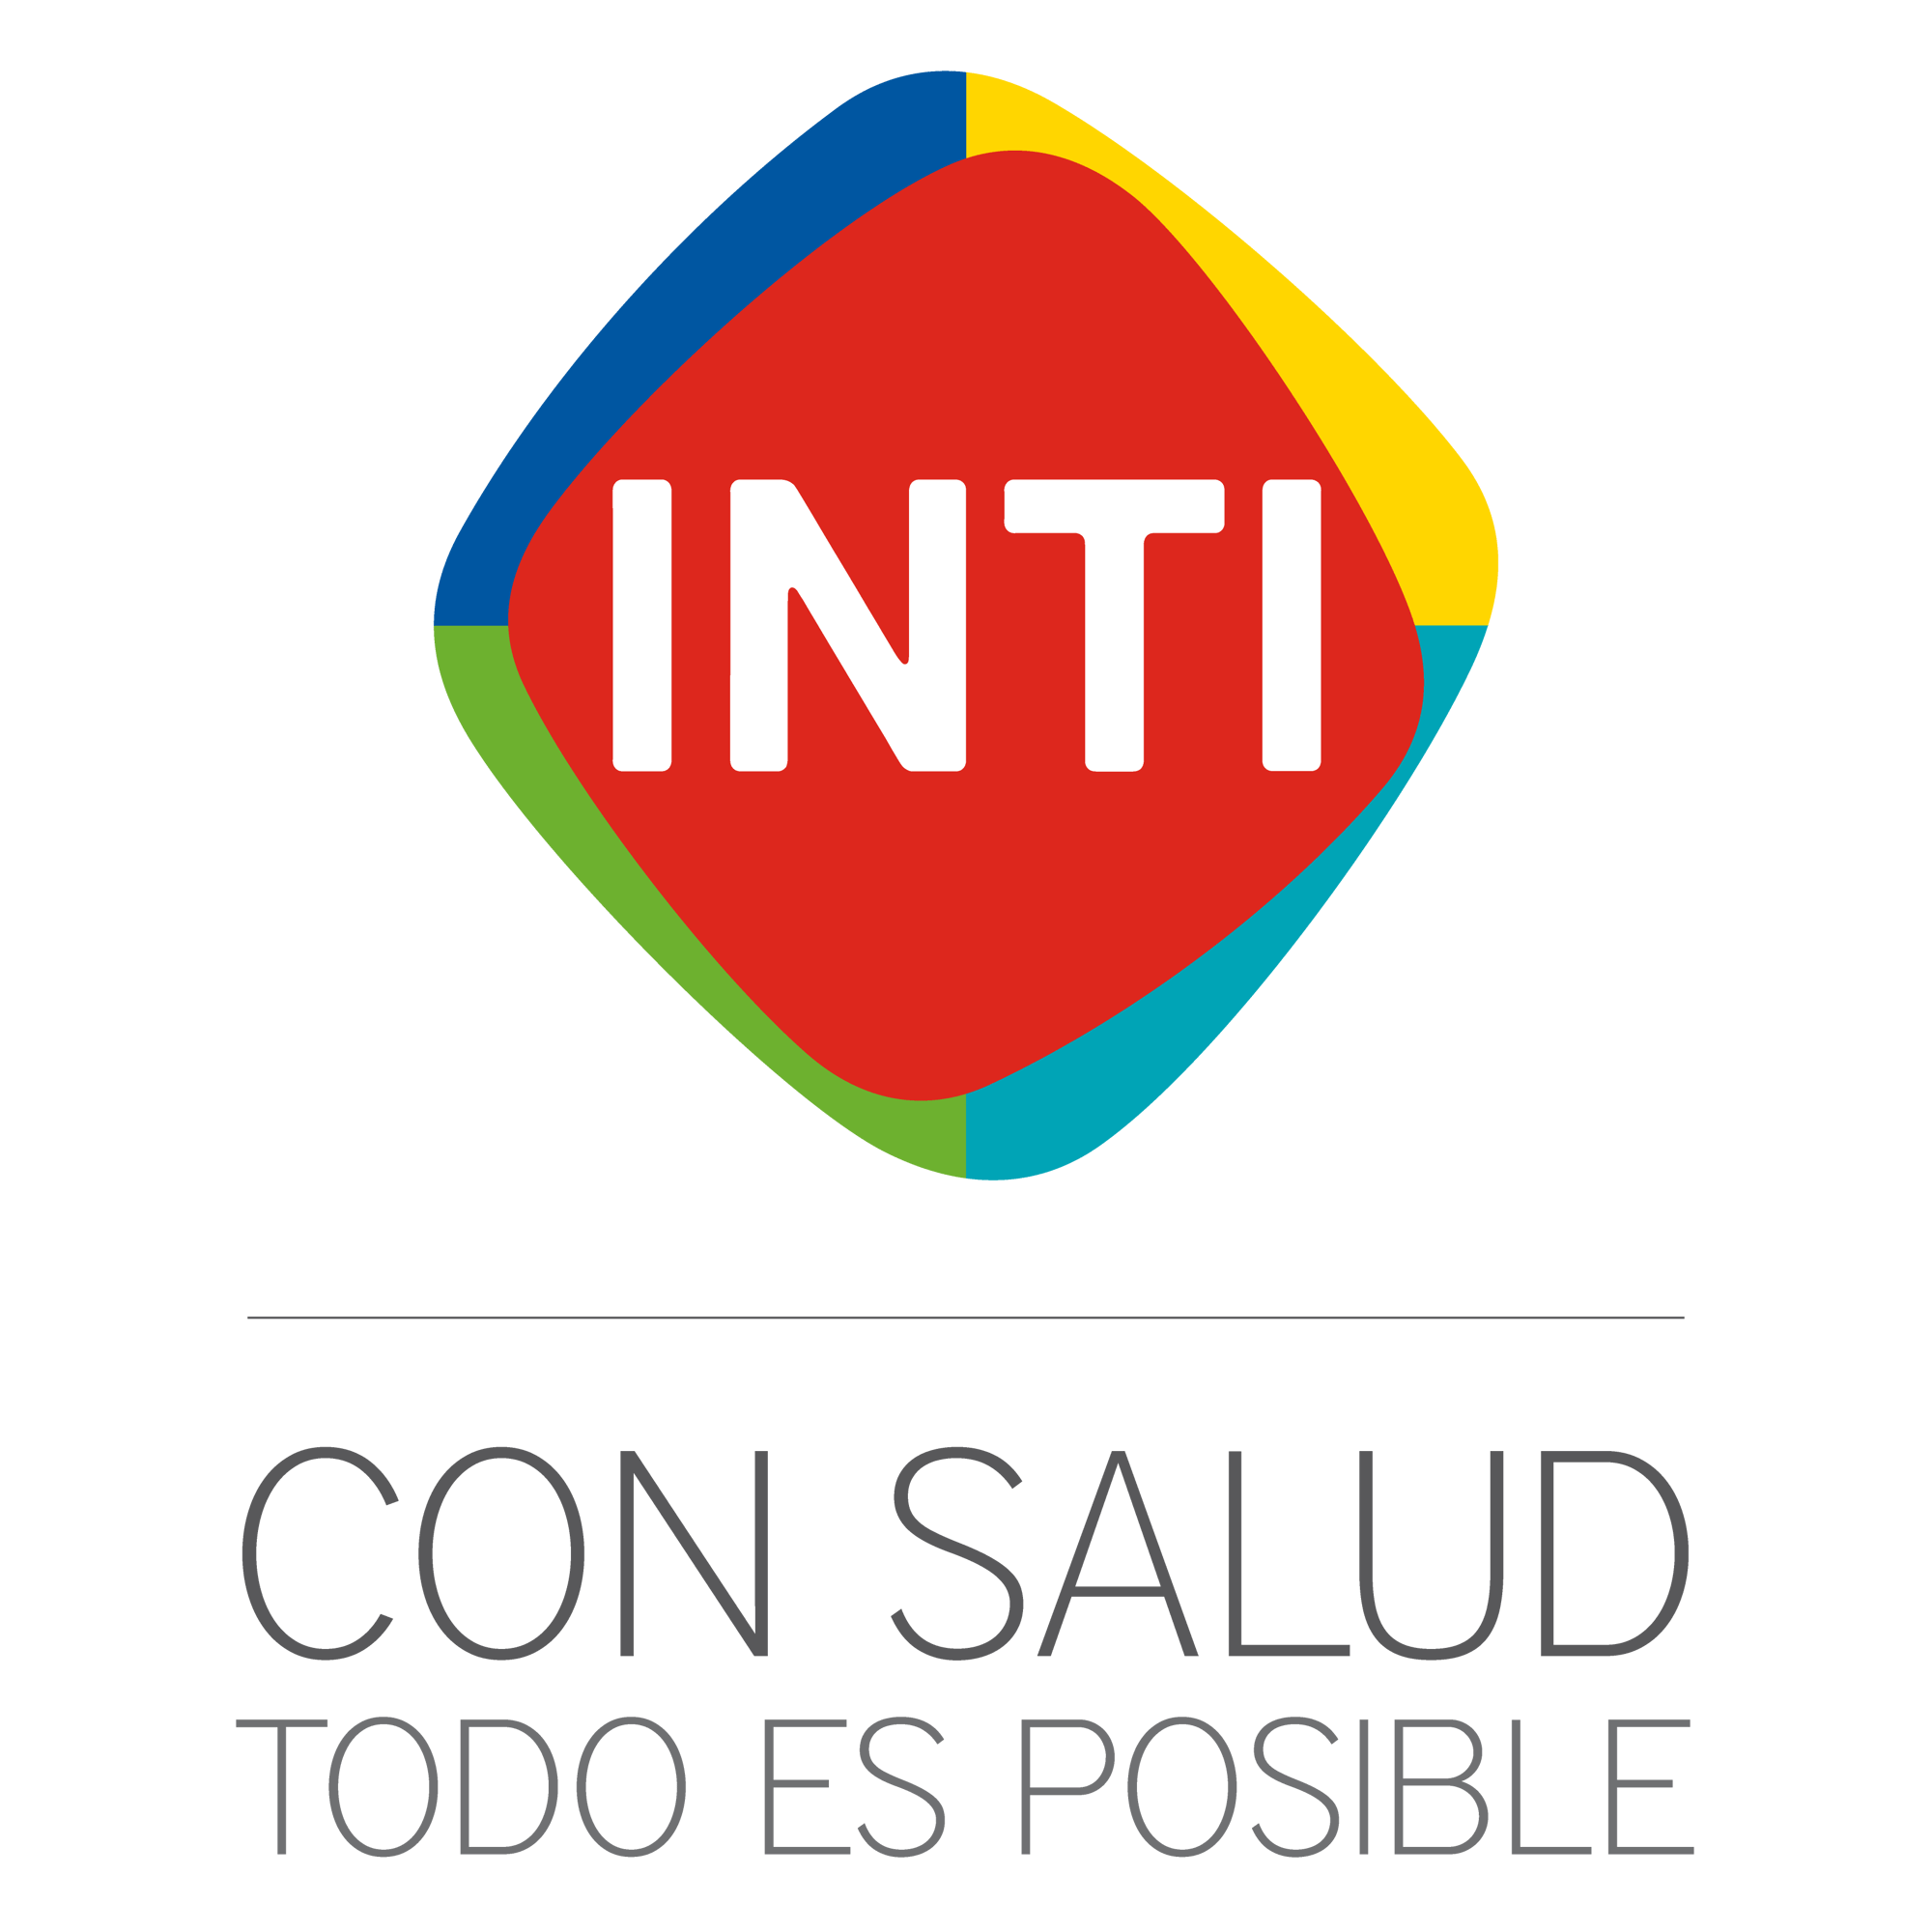 inti_logo